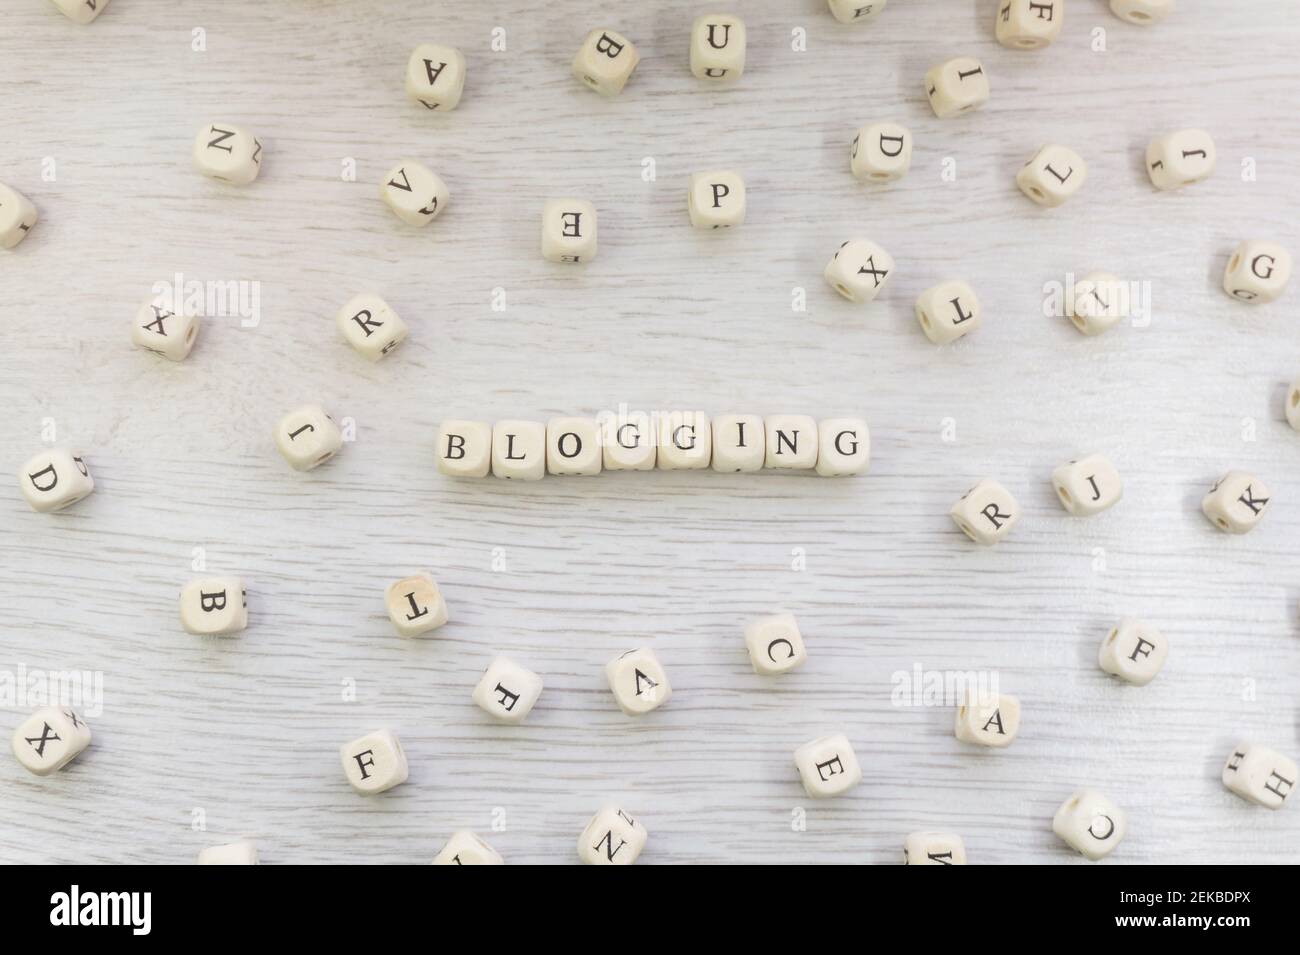 Word Blogging hecho con cubos de letras de madera de bloque Foto de stock